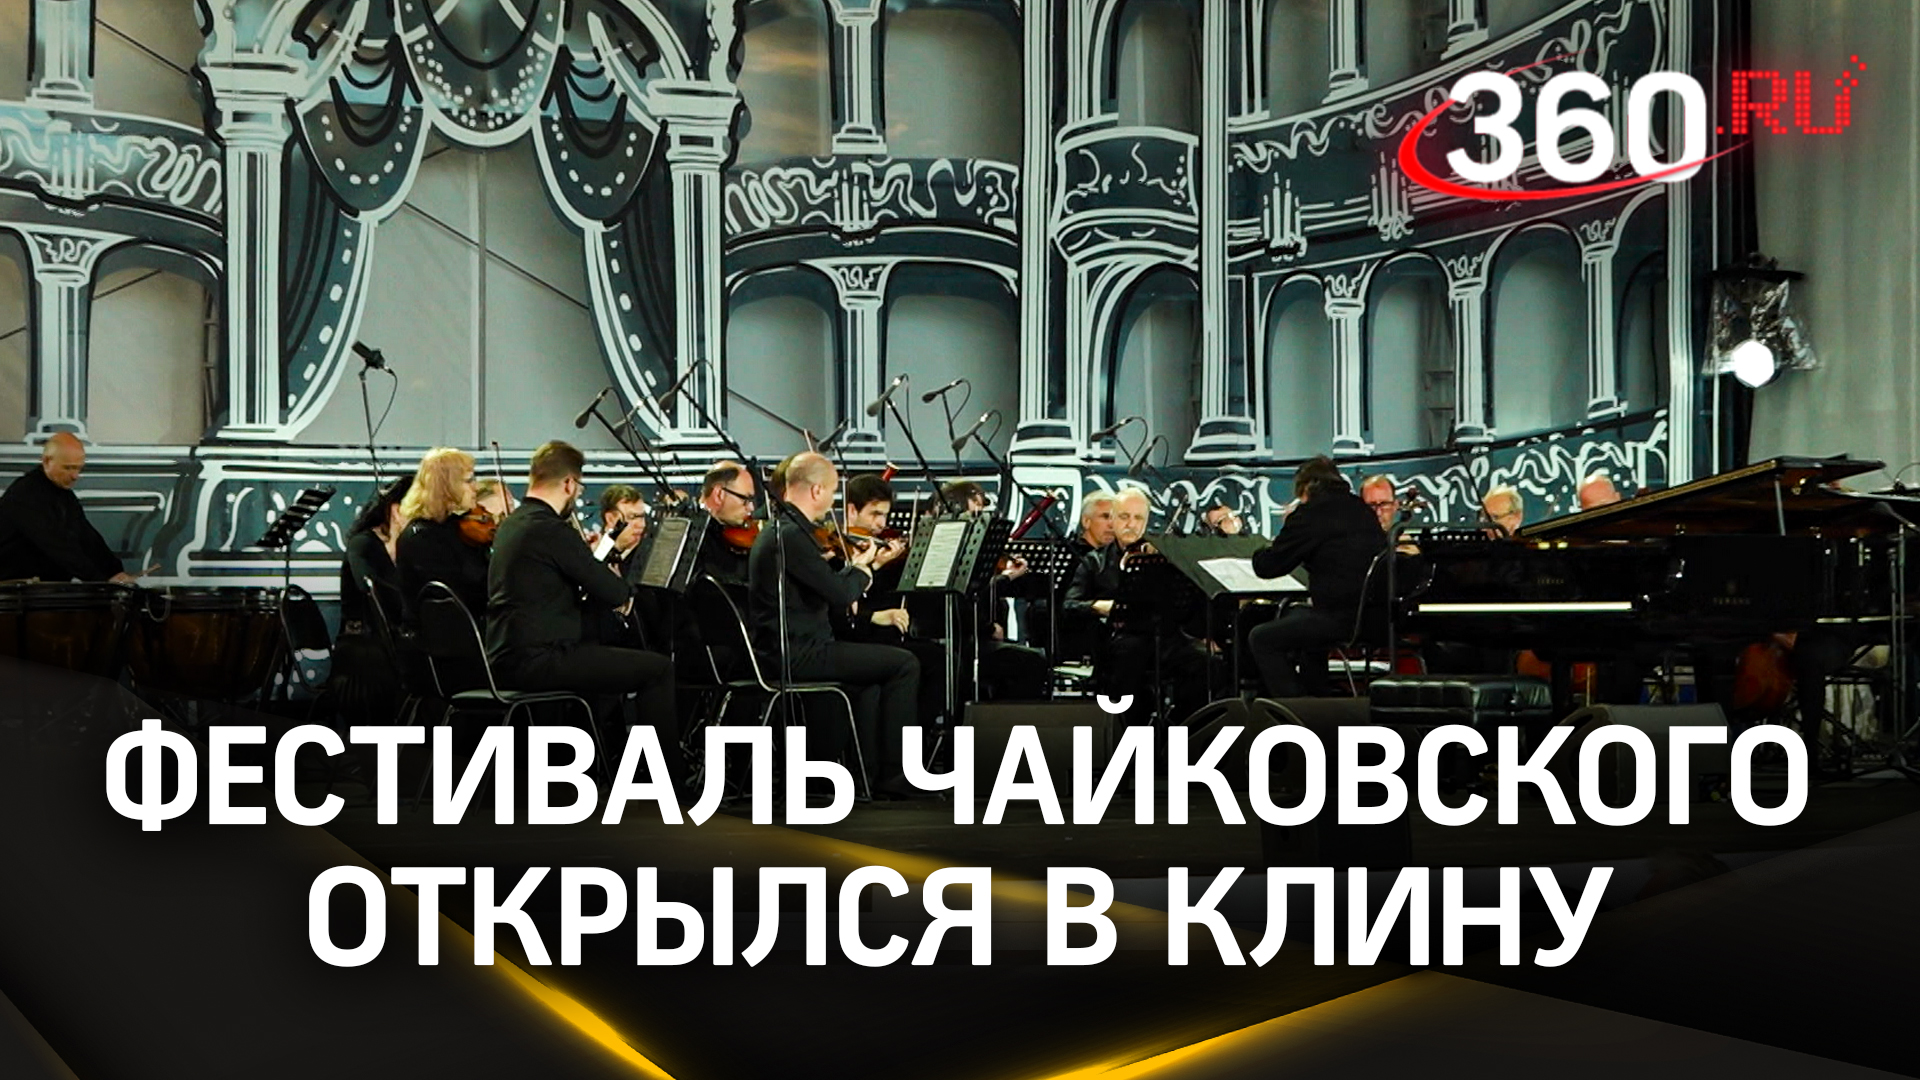 Классика, джаз и балет: Башмет и Мацуев открыли юбилейный фестиваль Чайковского в Клину